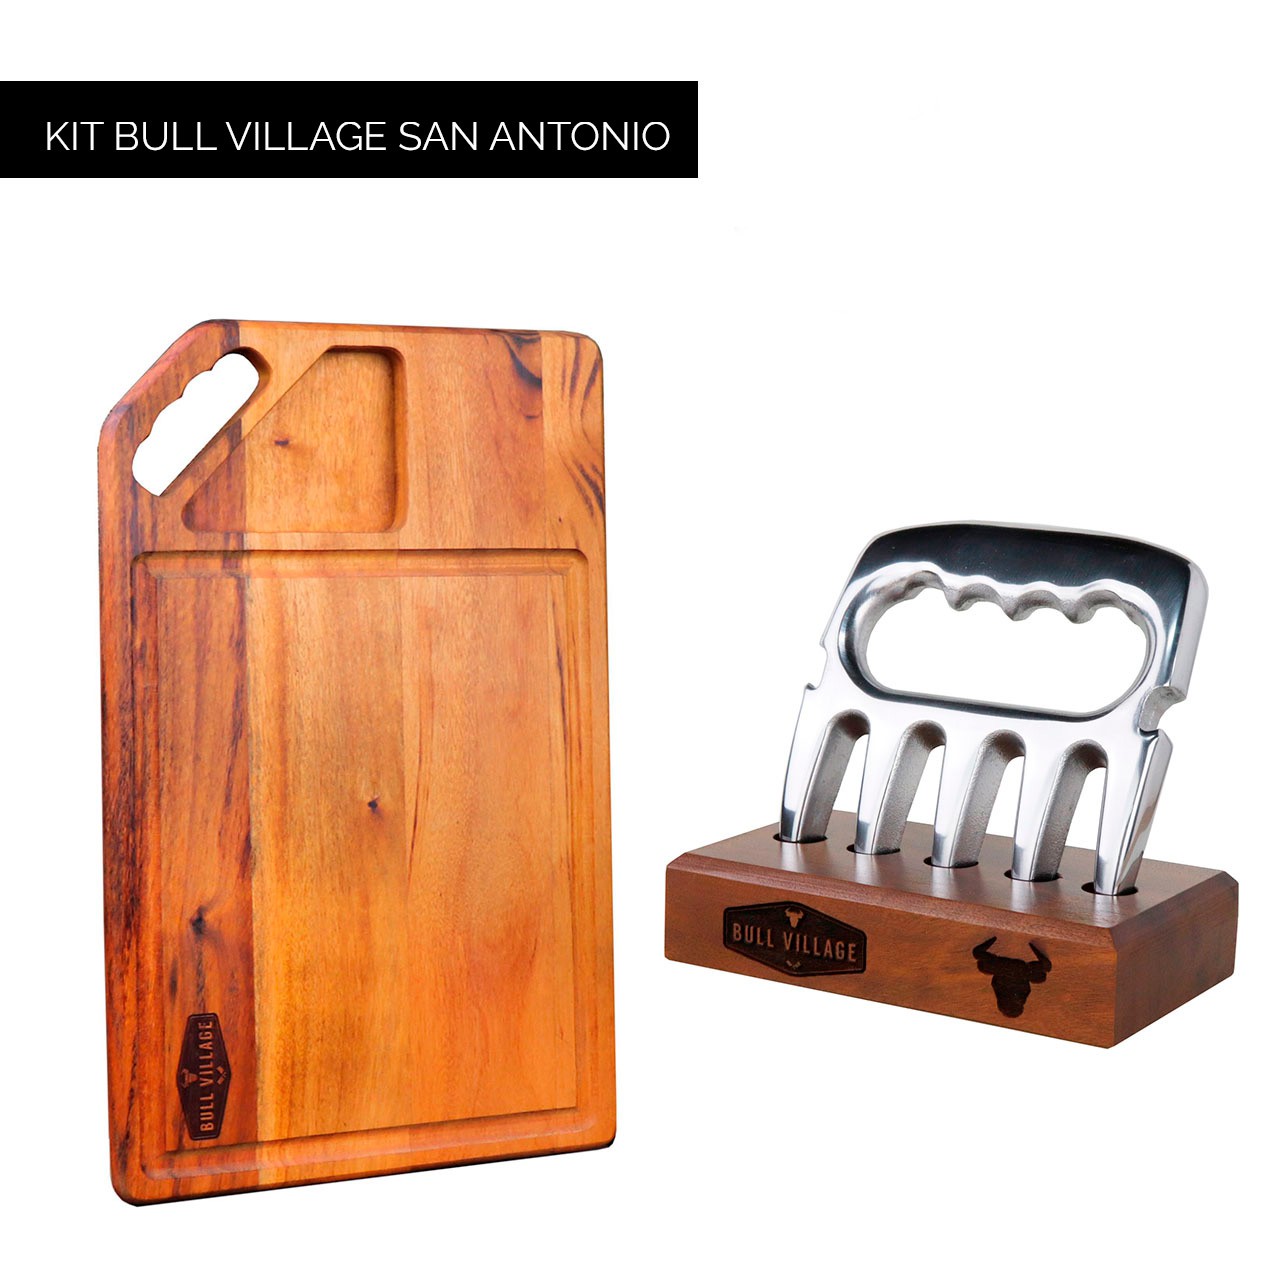 Kit Bull Village San Antonio